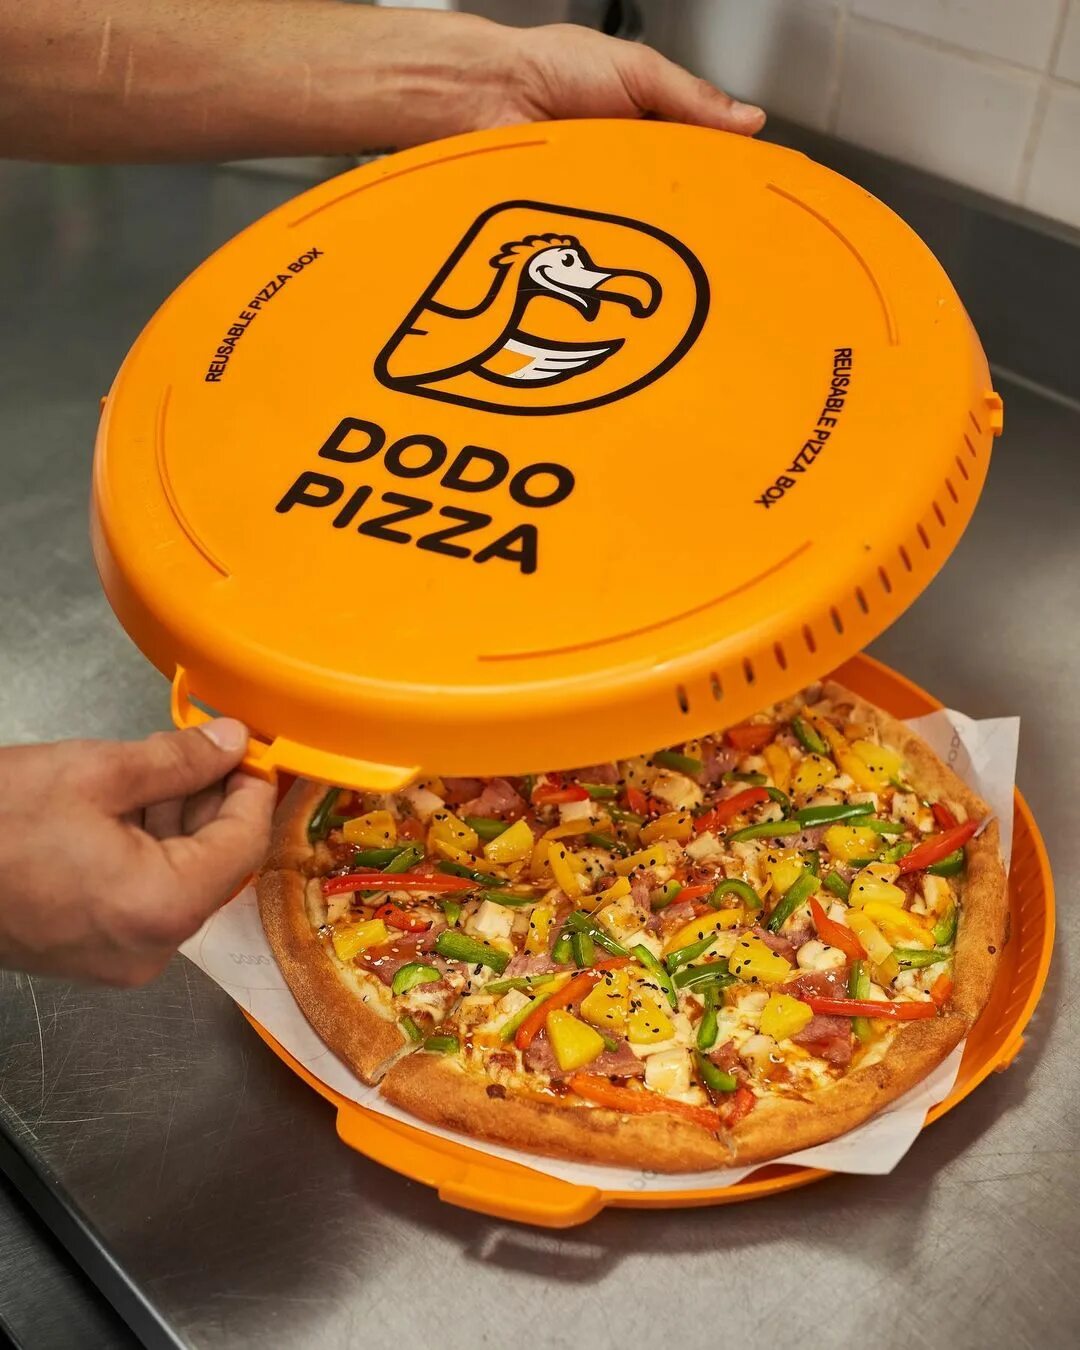 пепперони фреш пицца додо отзывы фото 79